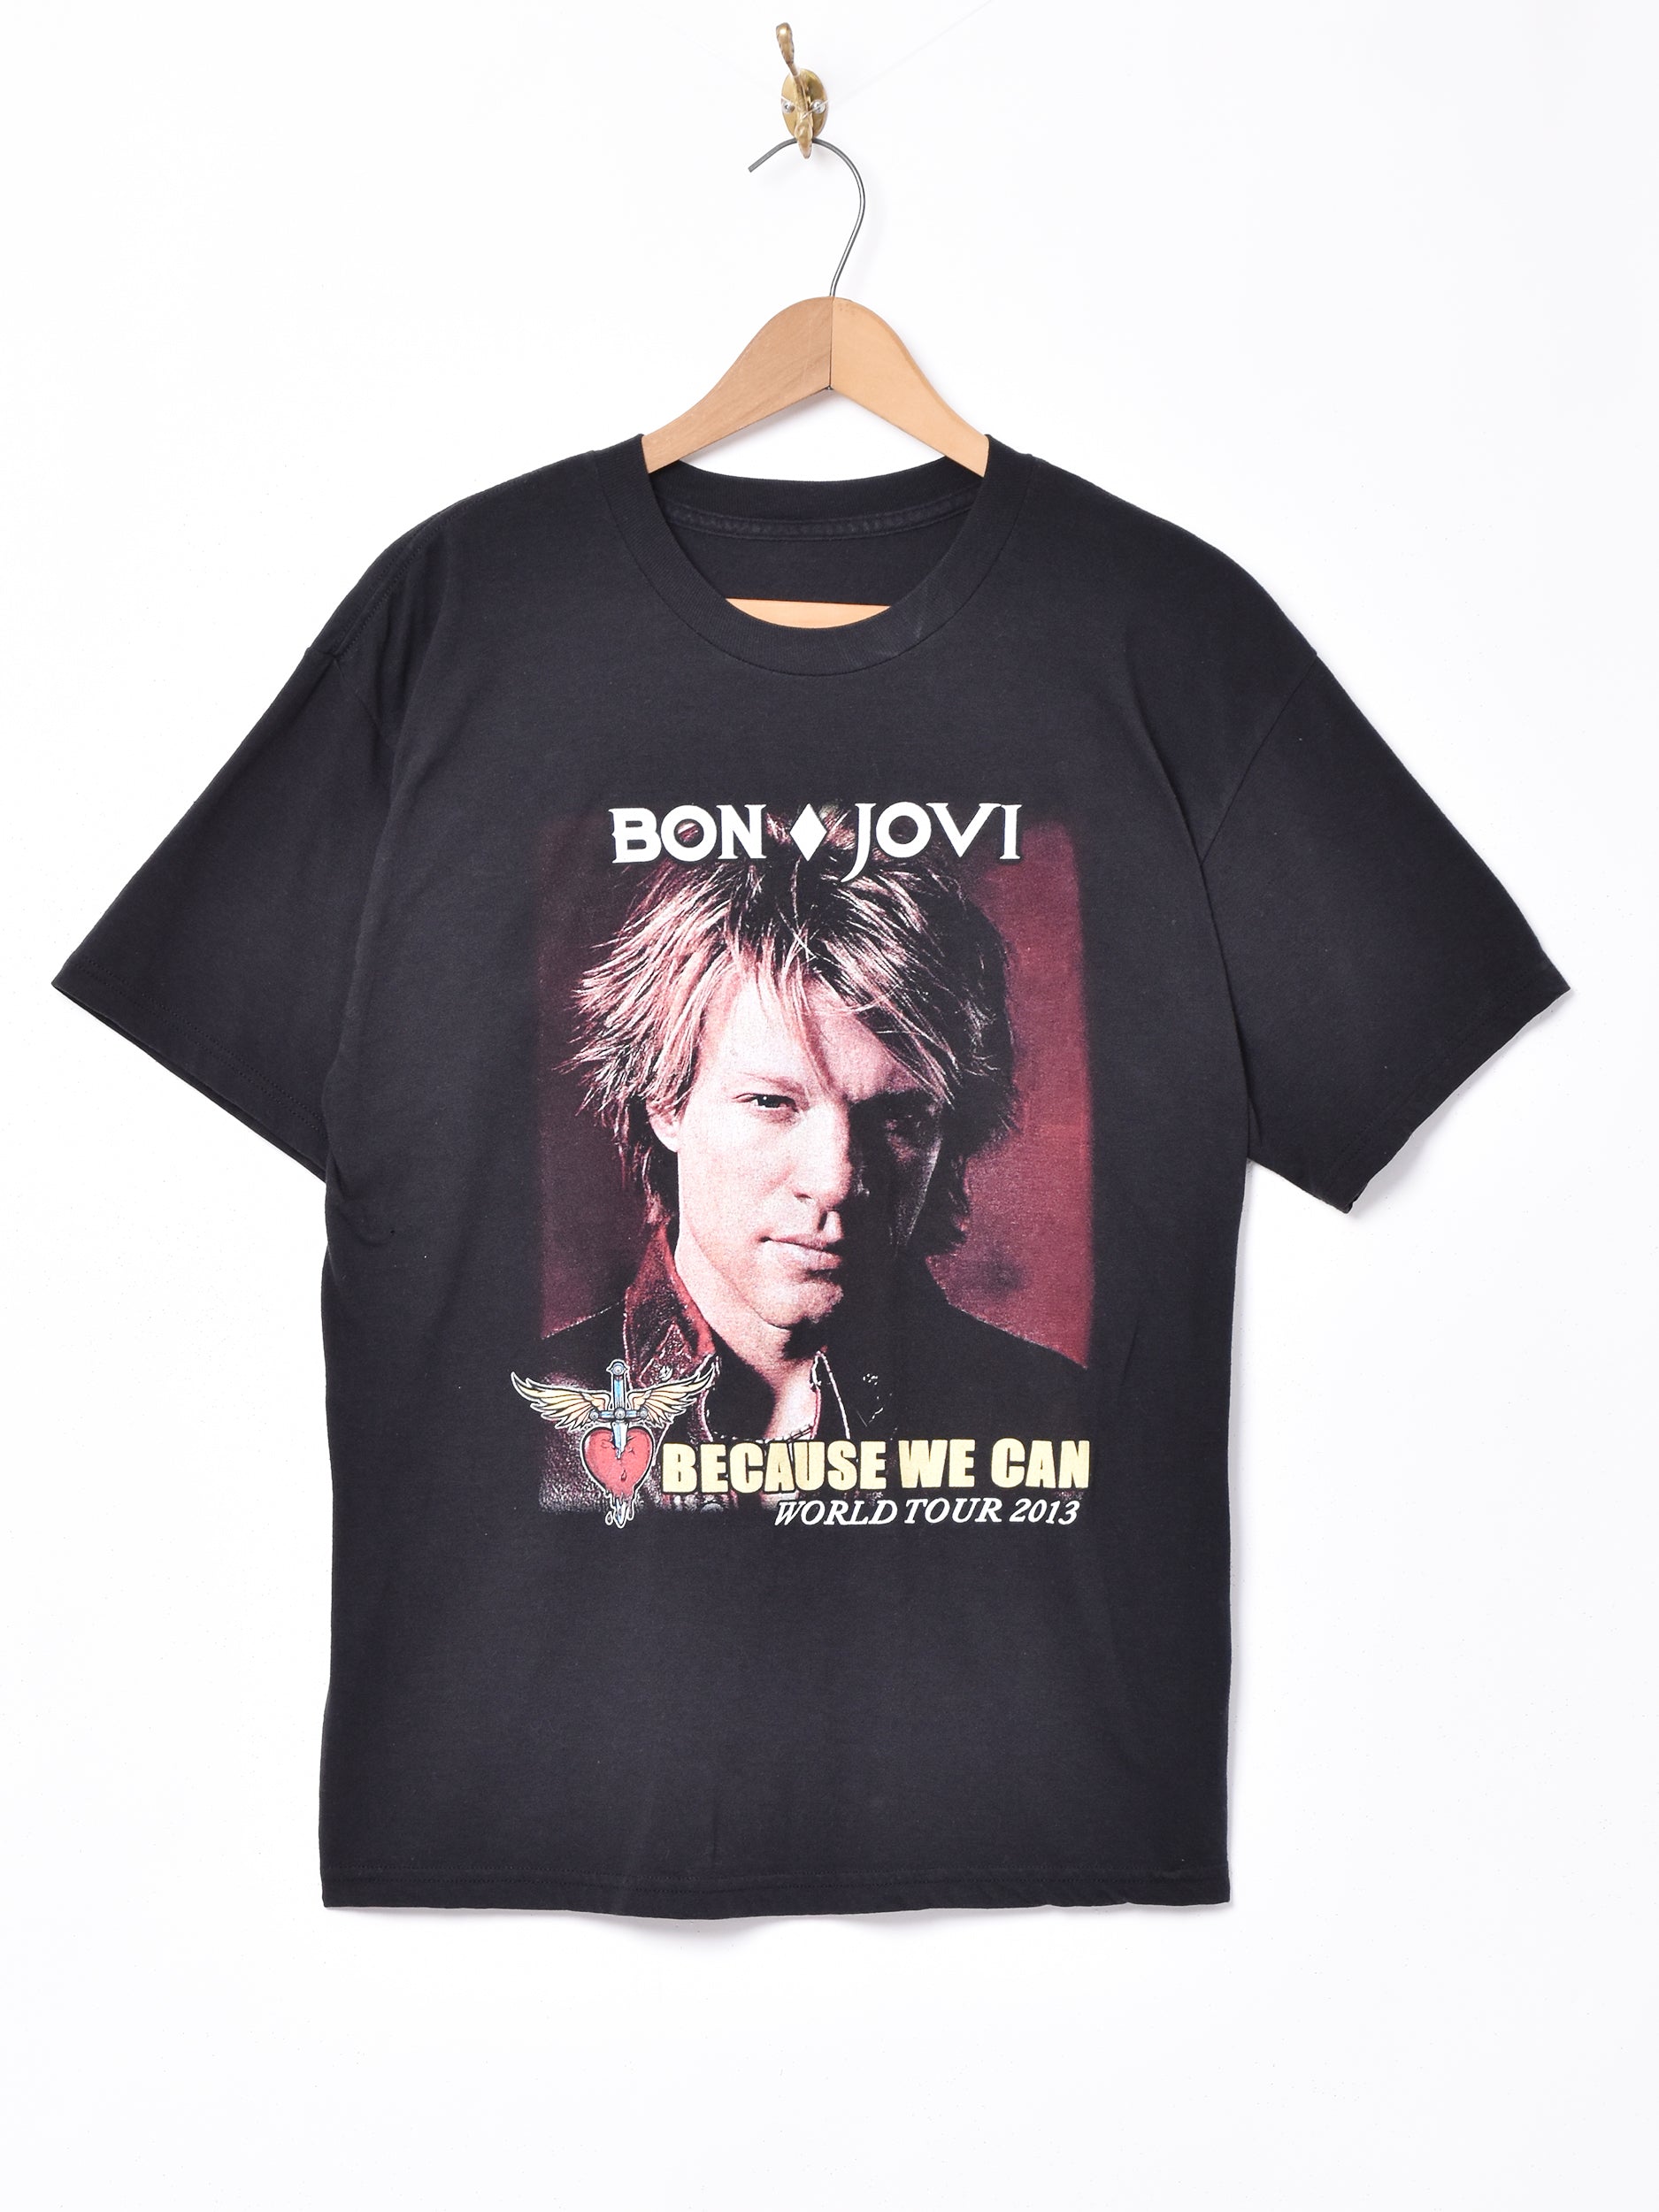 /1995ツアー Tシャツ BON JOVI ボンジョビ ボンジョヴィacdc